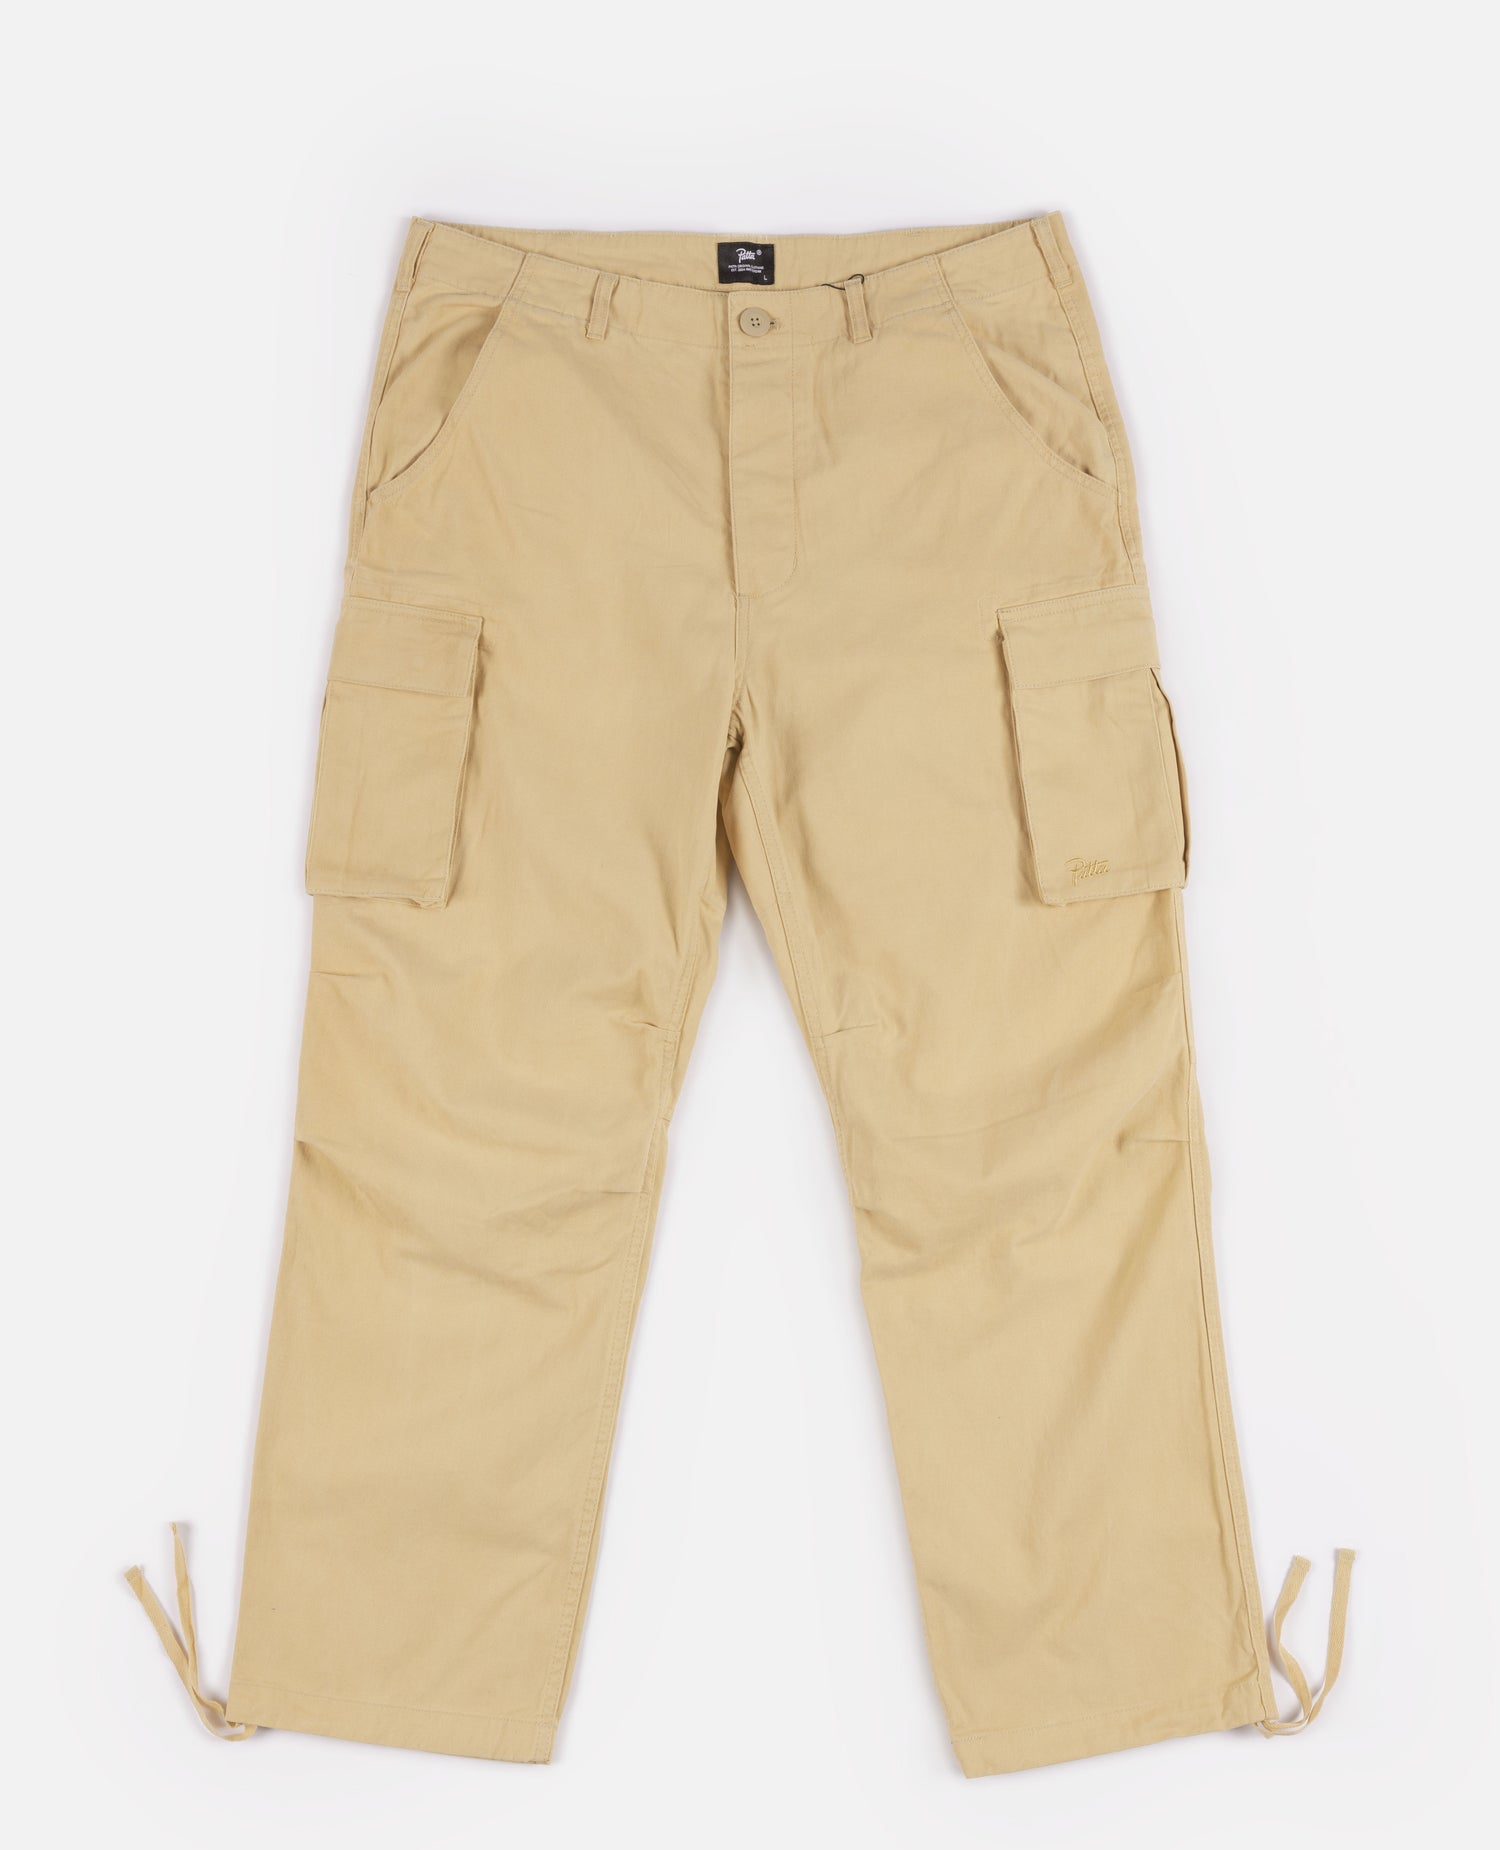 Patta Basic Cargo Pants (Taos Taupe)